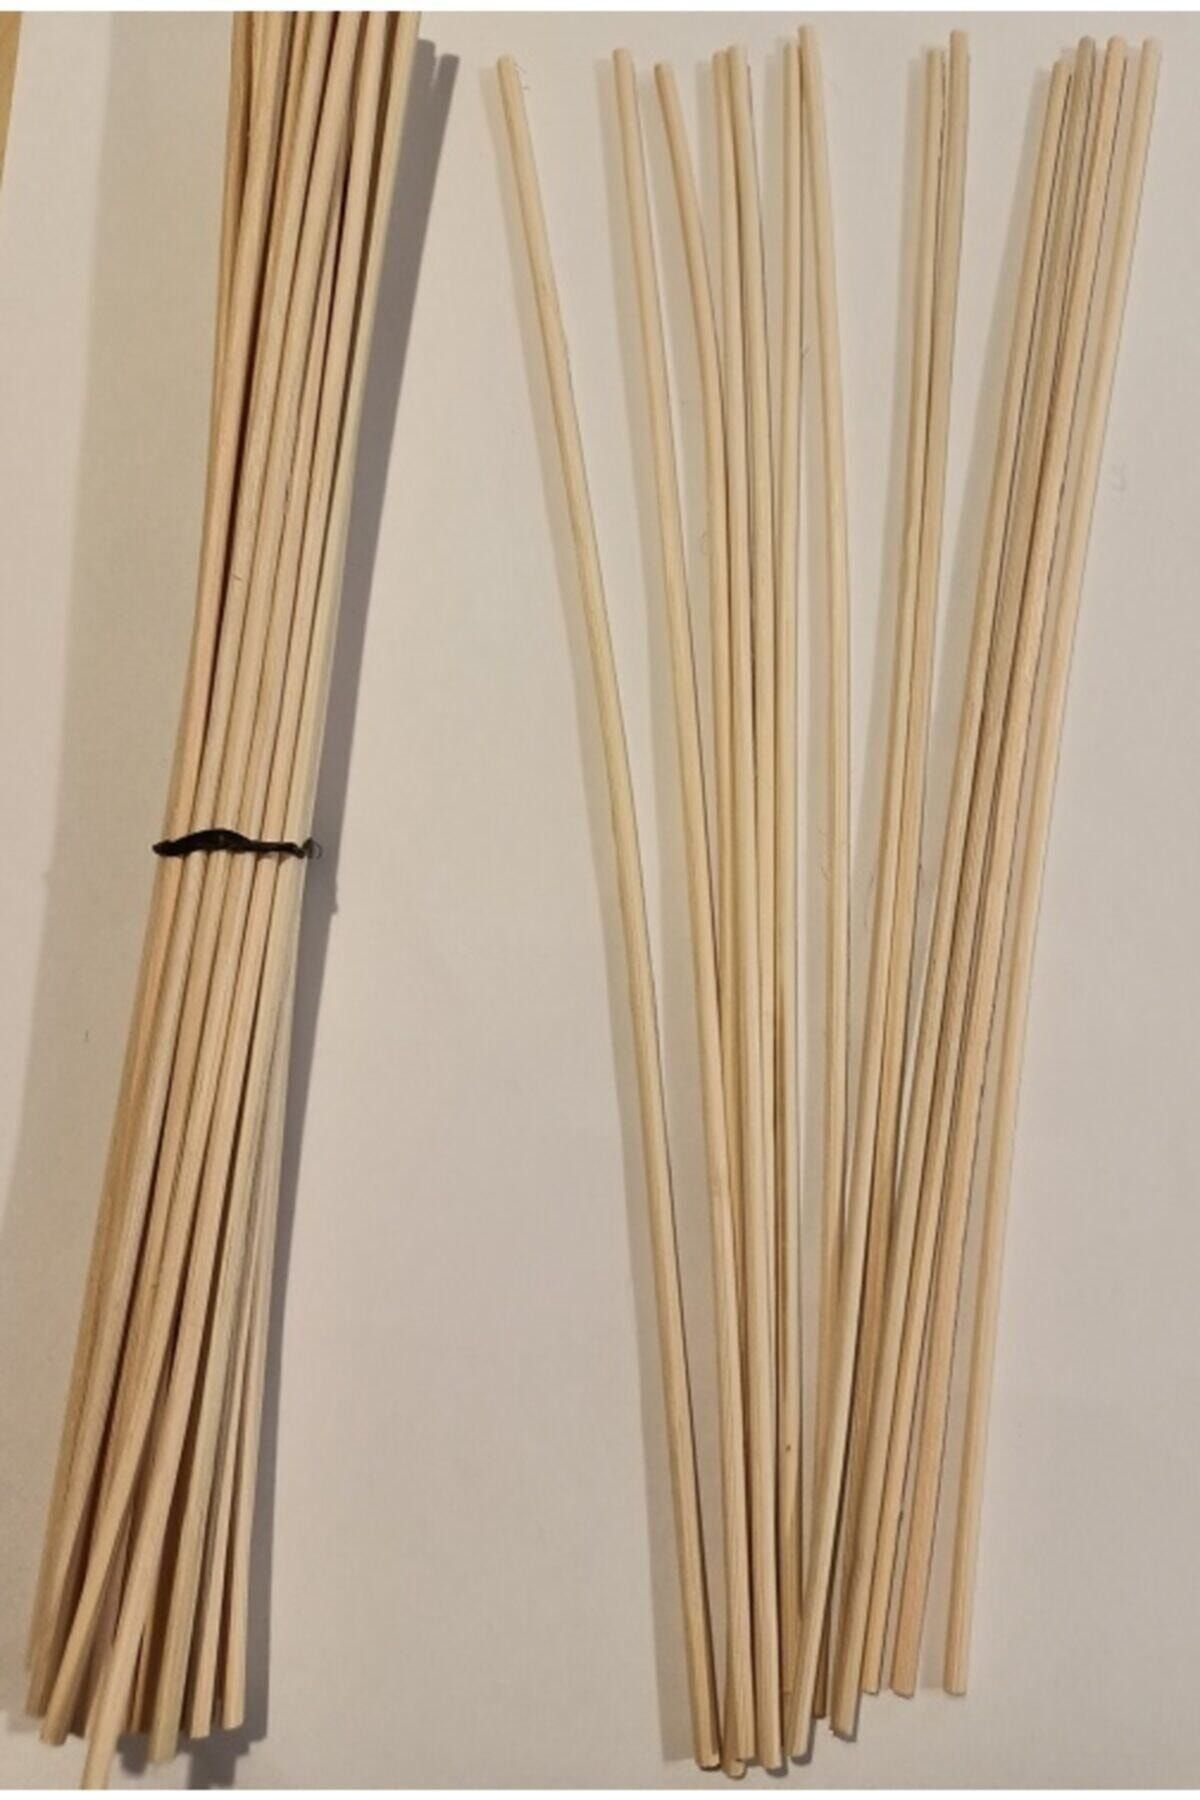 Aker Hediyelik Bambu Rattan Koku Çubuğu 20 Cm Uzunluk 30 Adet